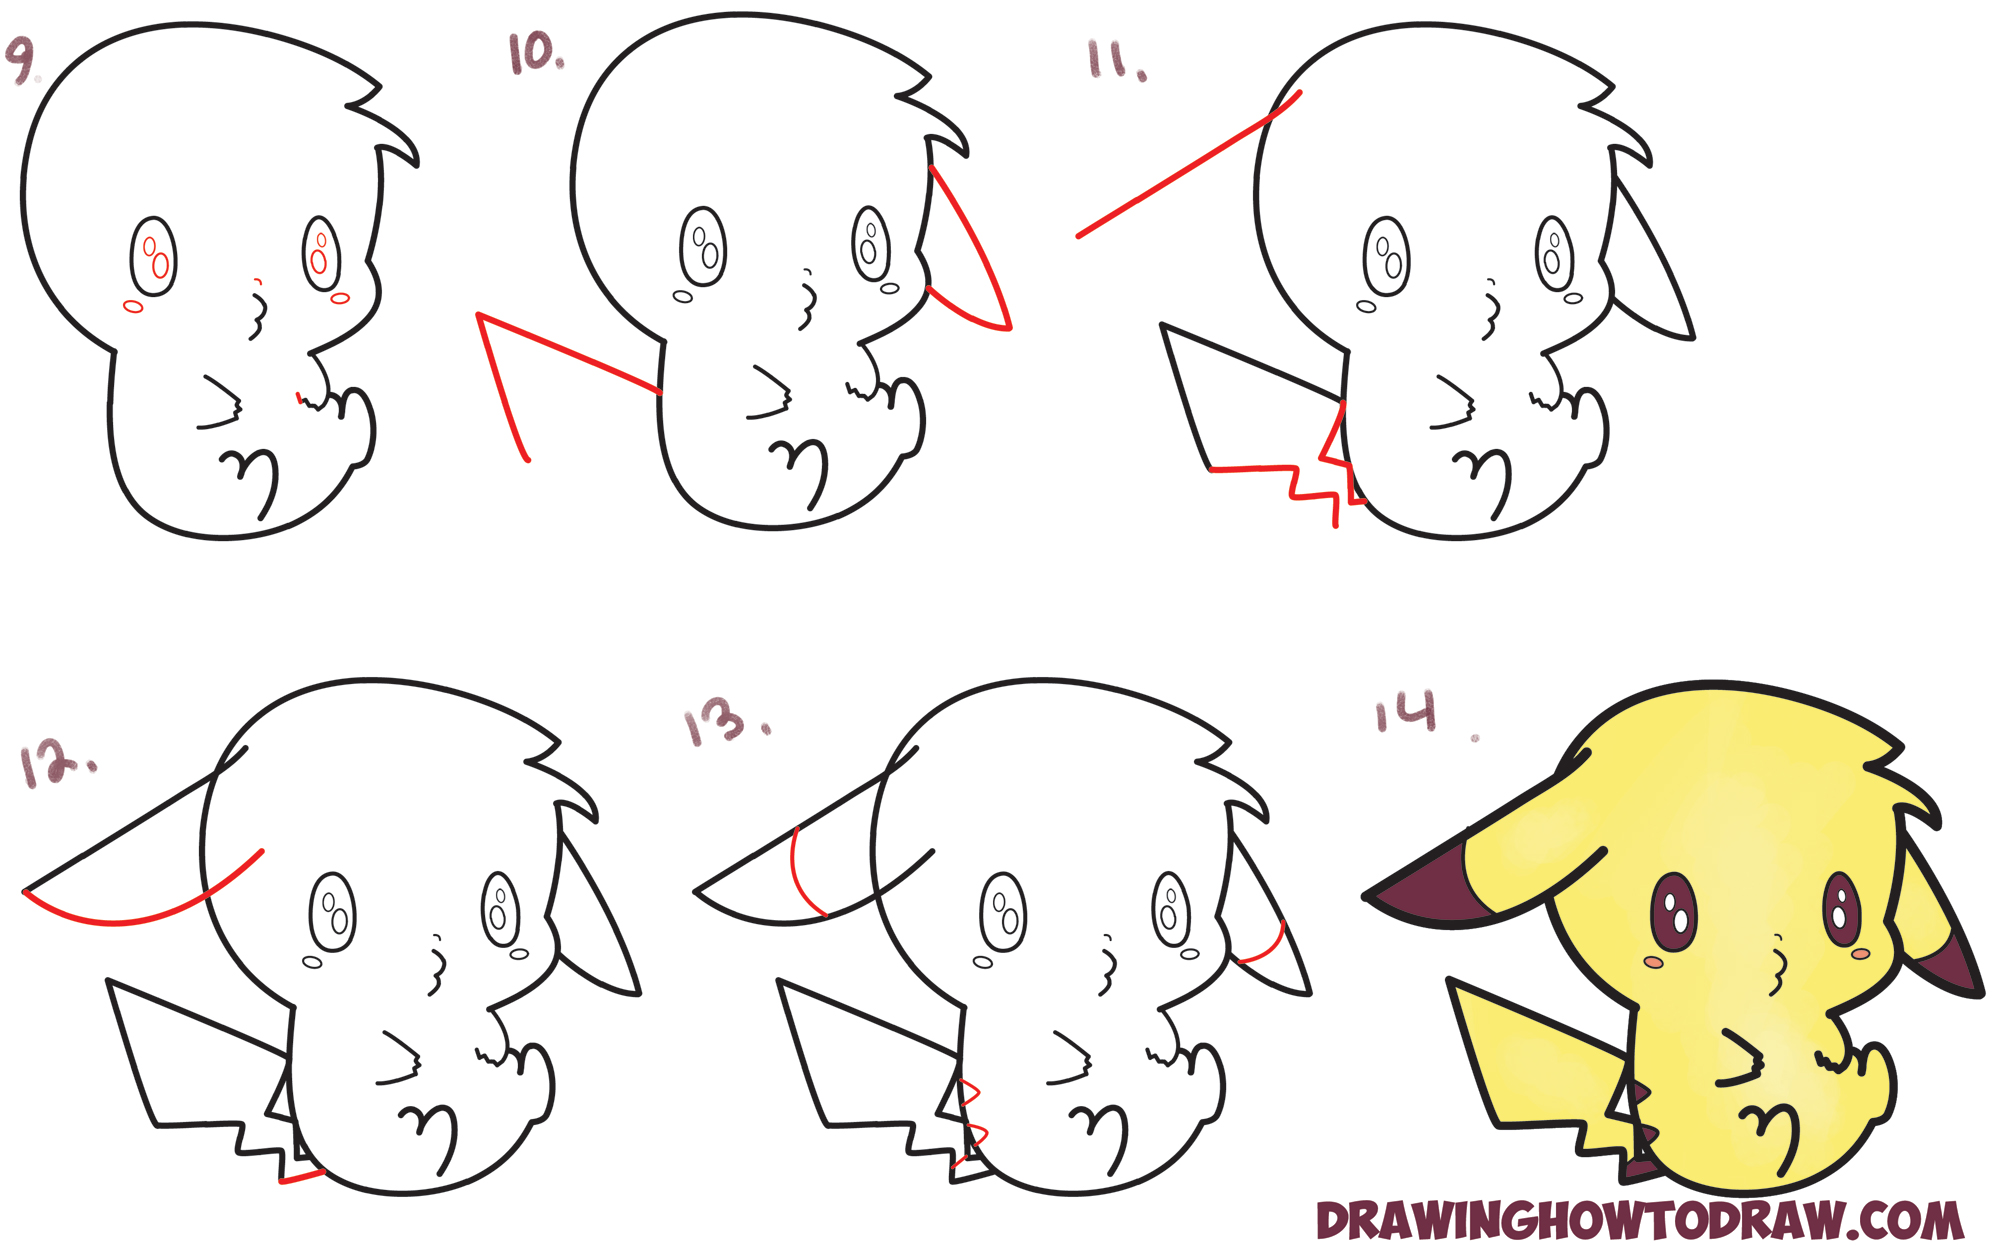 Como desenhar um Pikachu Chibi